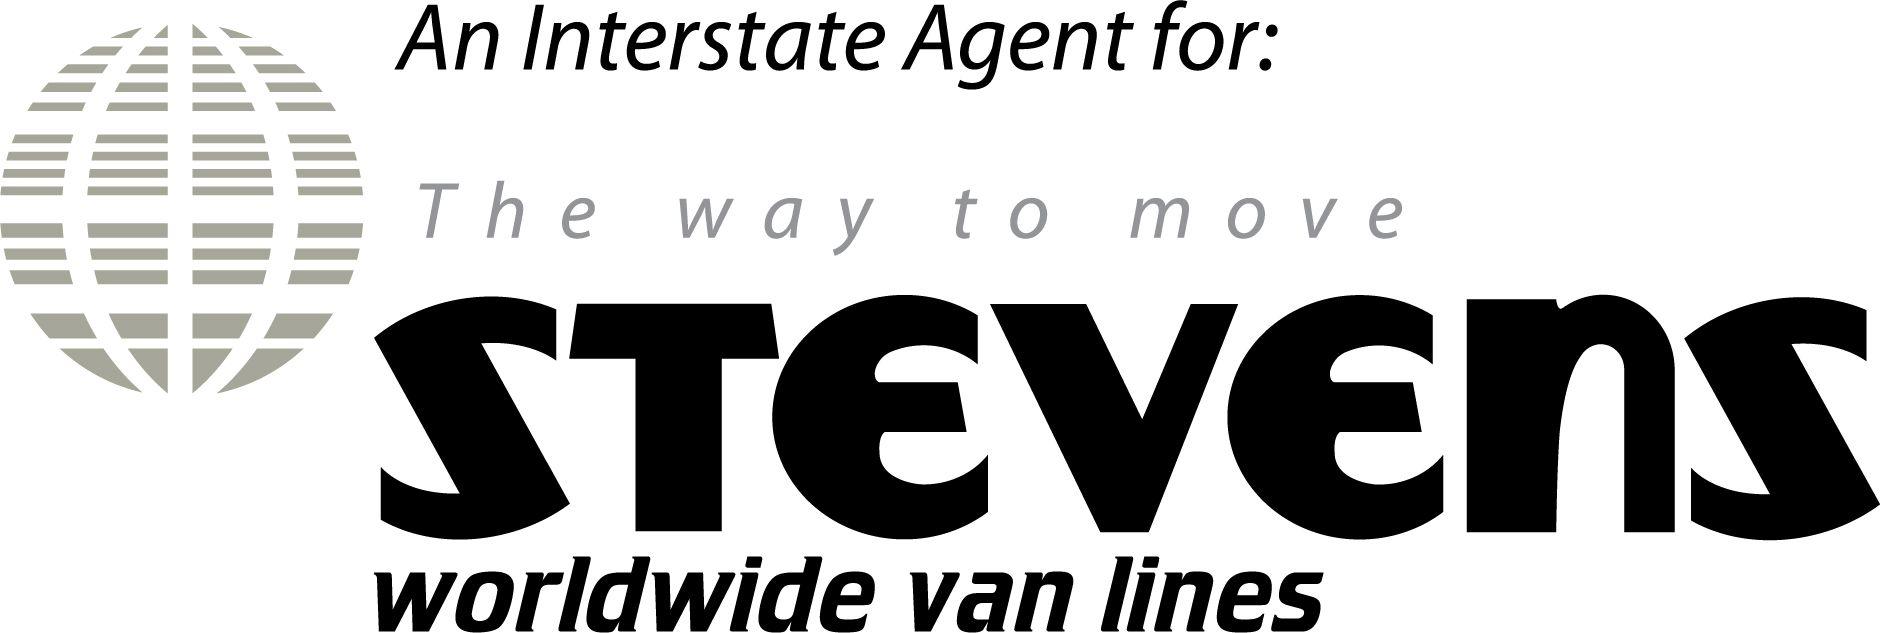 Stevens Logo - Interstate Agent Logo. Stevens Worldwide Van Lines